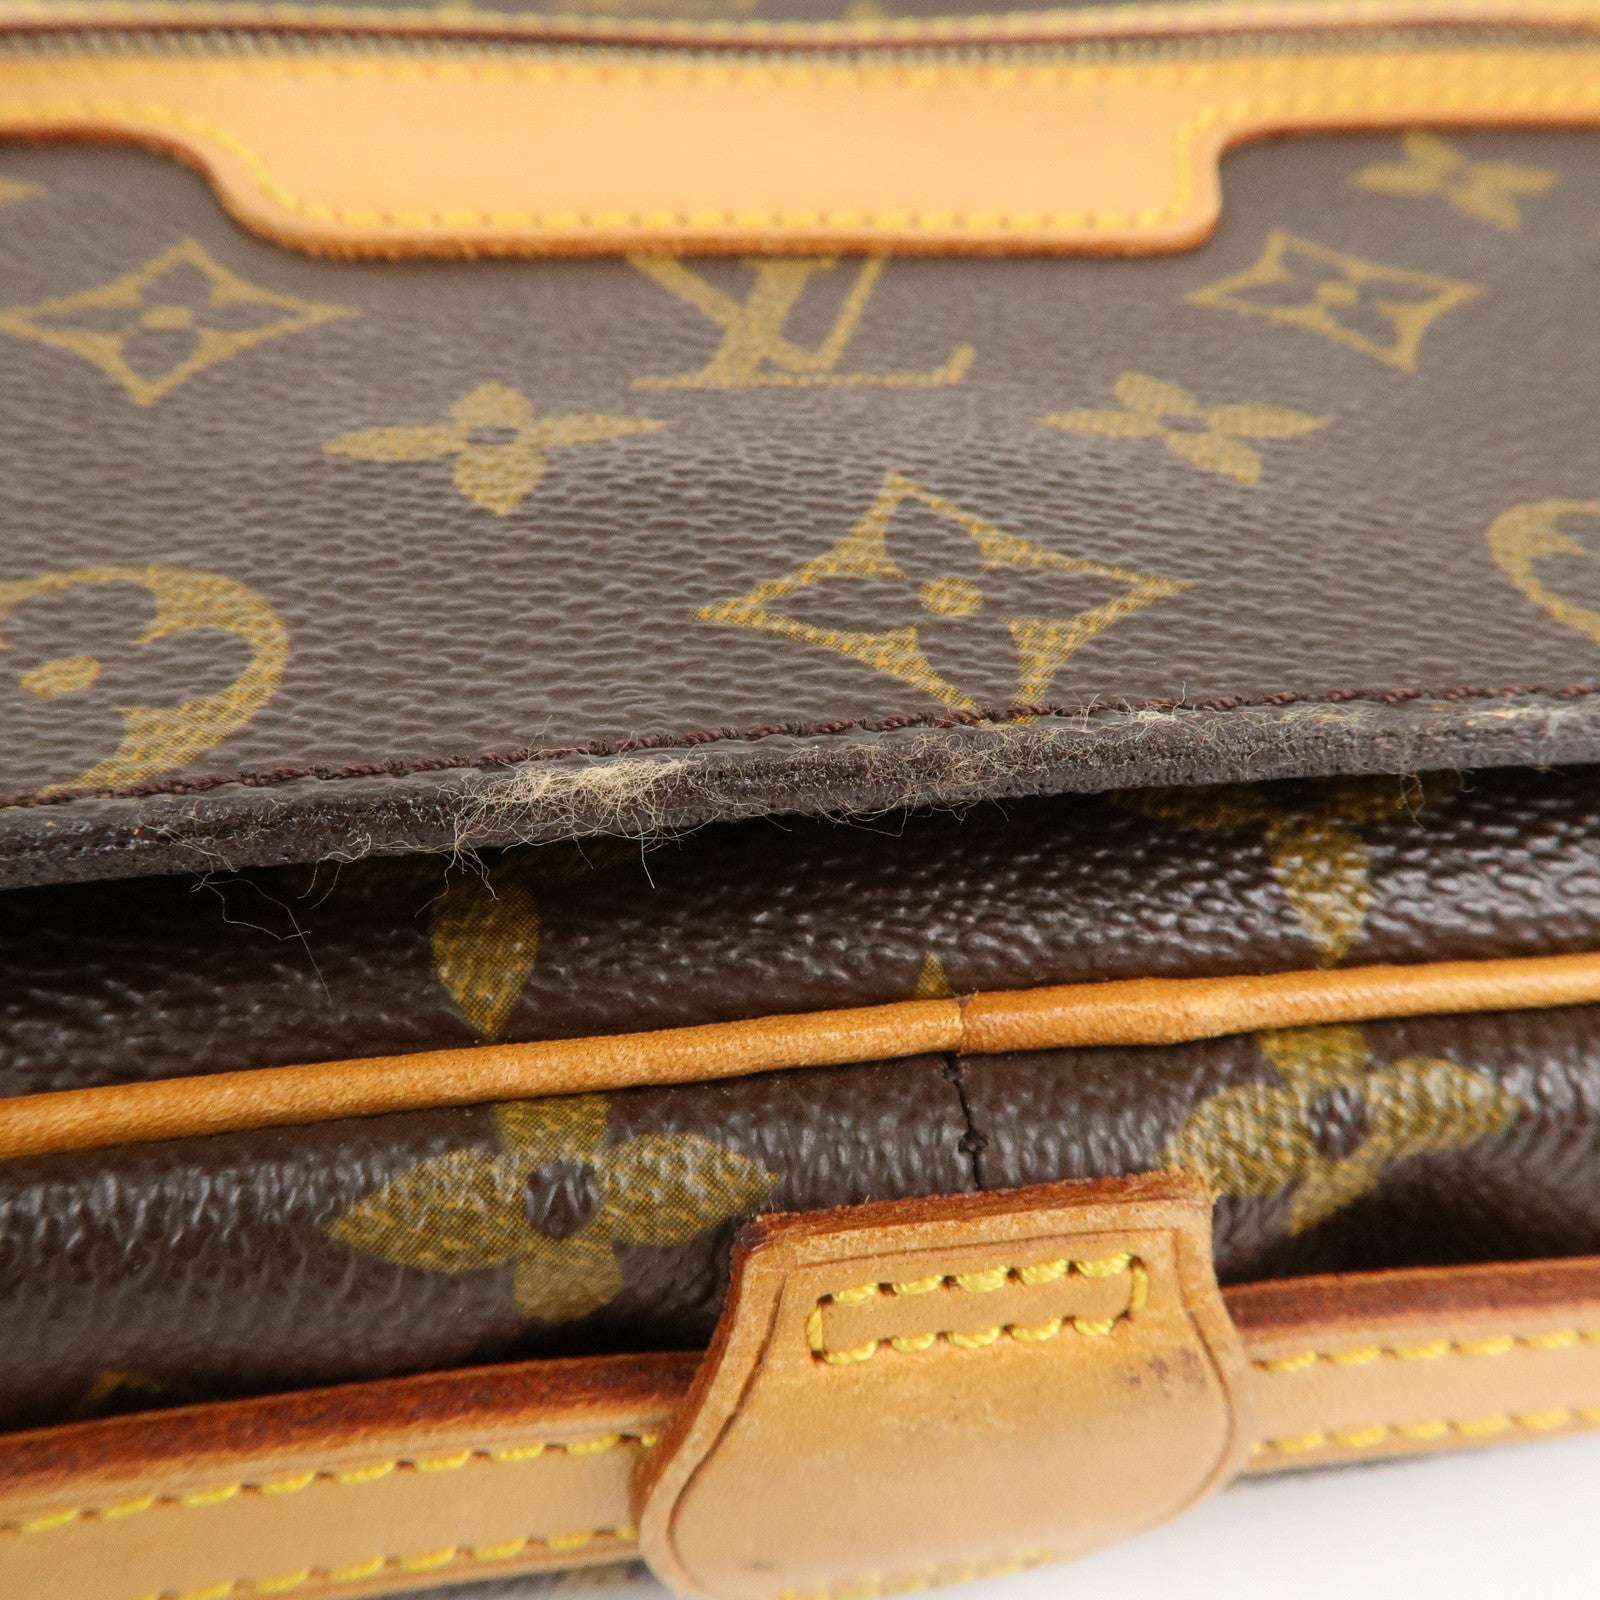 Louis+Vuitton+Saint+Germain+Shoulder+Bag+Brown+Leather for sale online